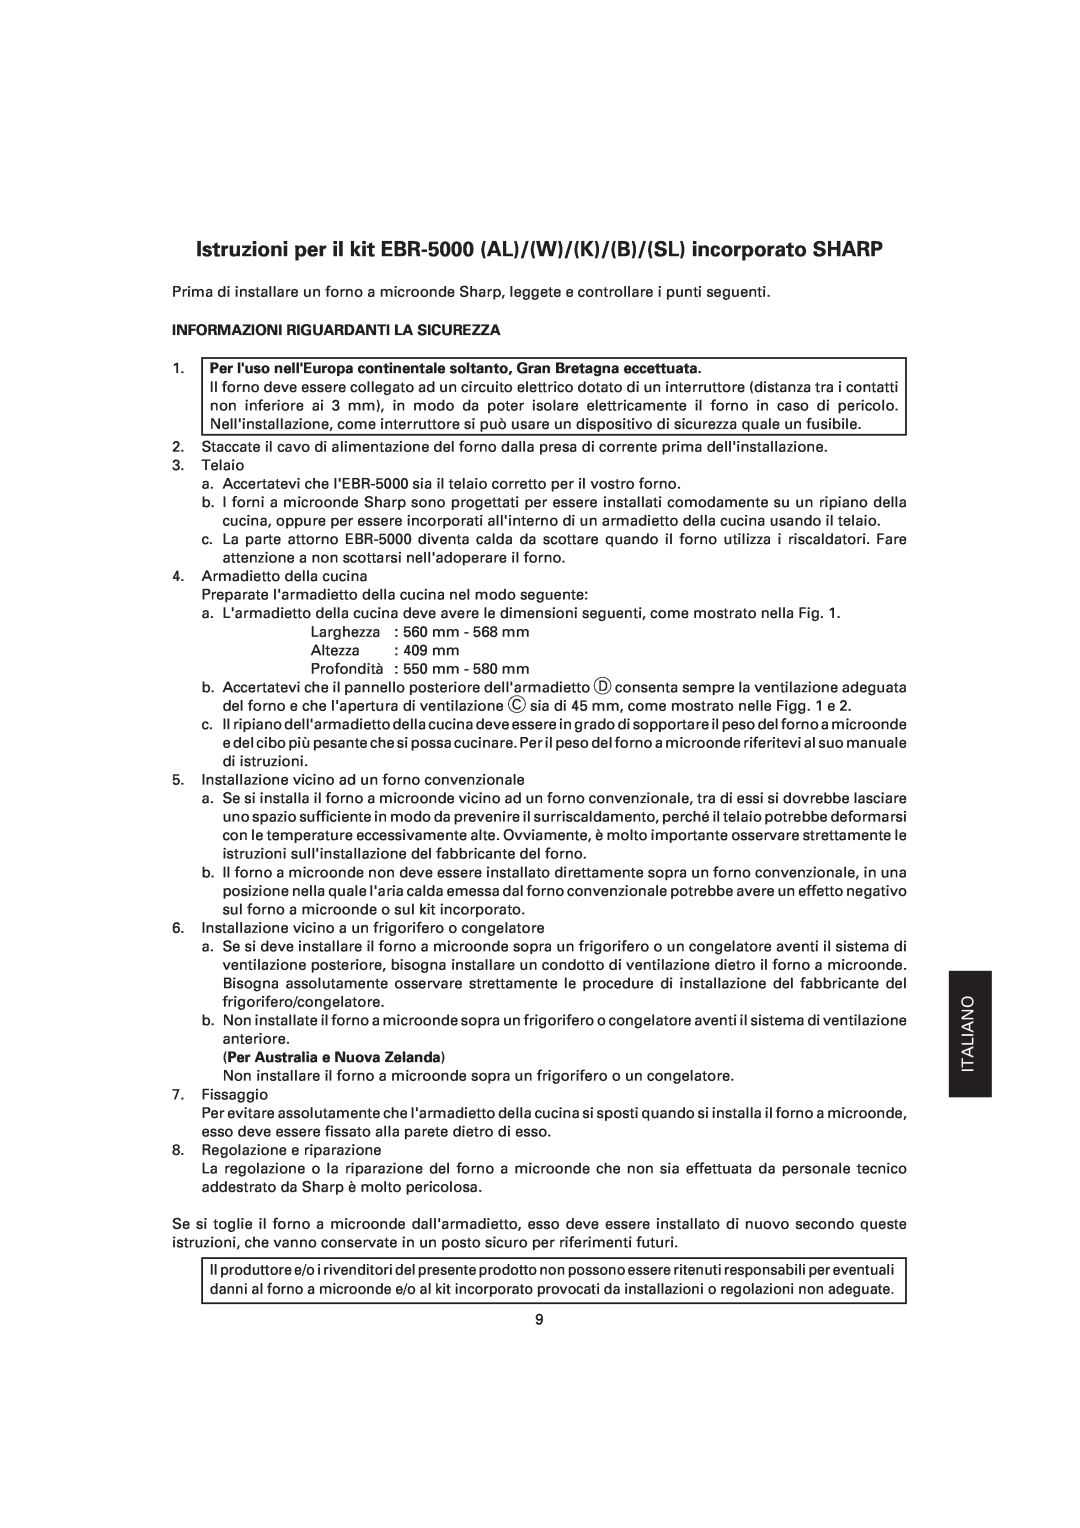 Sharp EBR-5000 dimensions Informazioni Riguardanti La Sicurezza, Per Australia e Nuova Zelanda, Español 